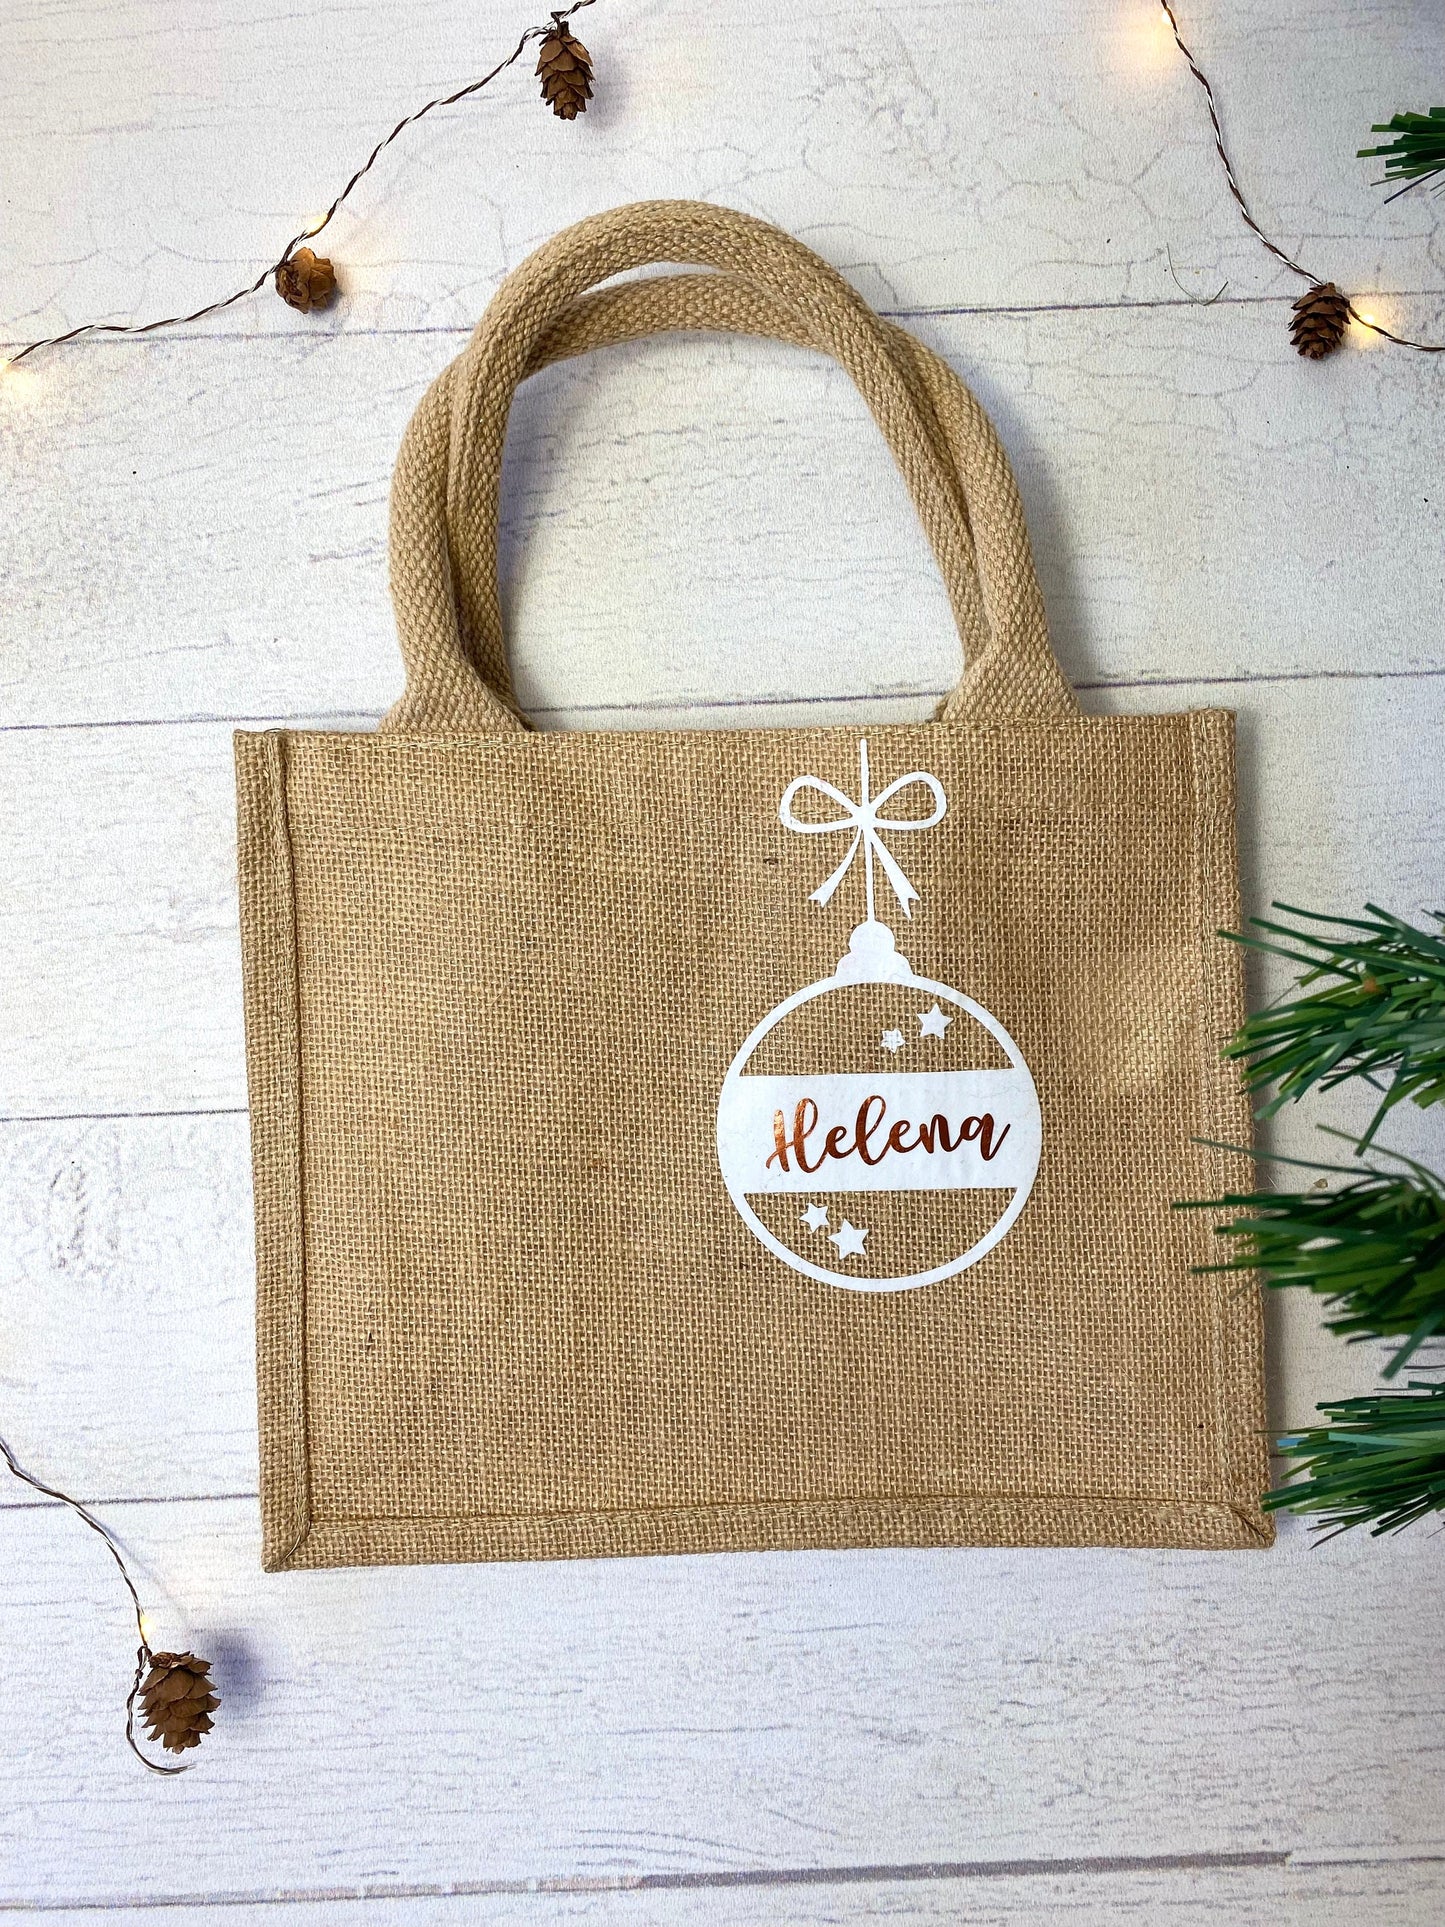 Jutebeutel Tasche aus Jute klein - personalisiert mit Weihnachtskugel und Namen - persönliche Geschenkverpackung - nachhaltig